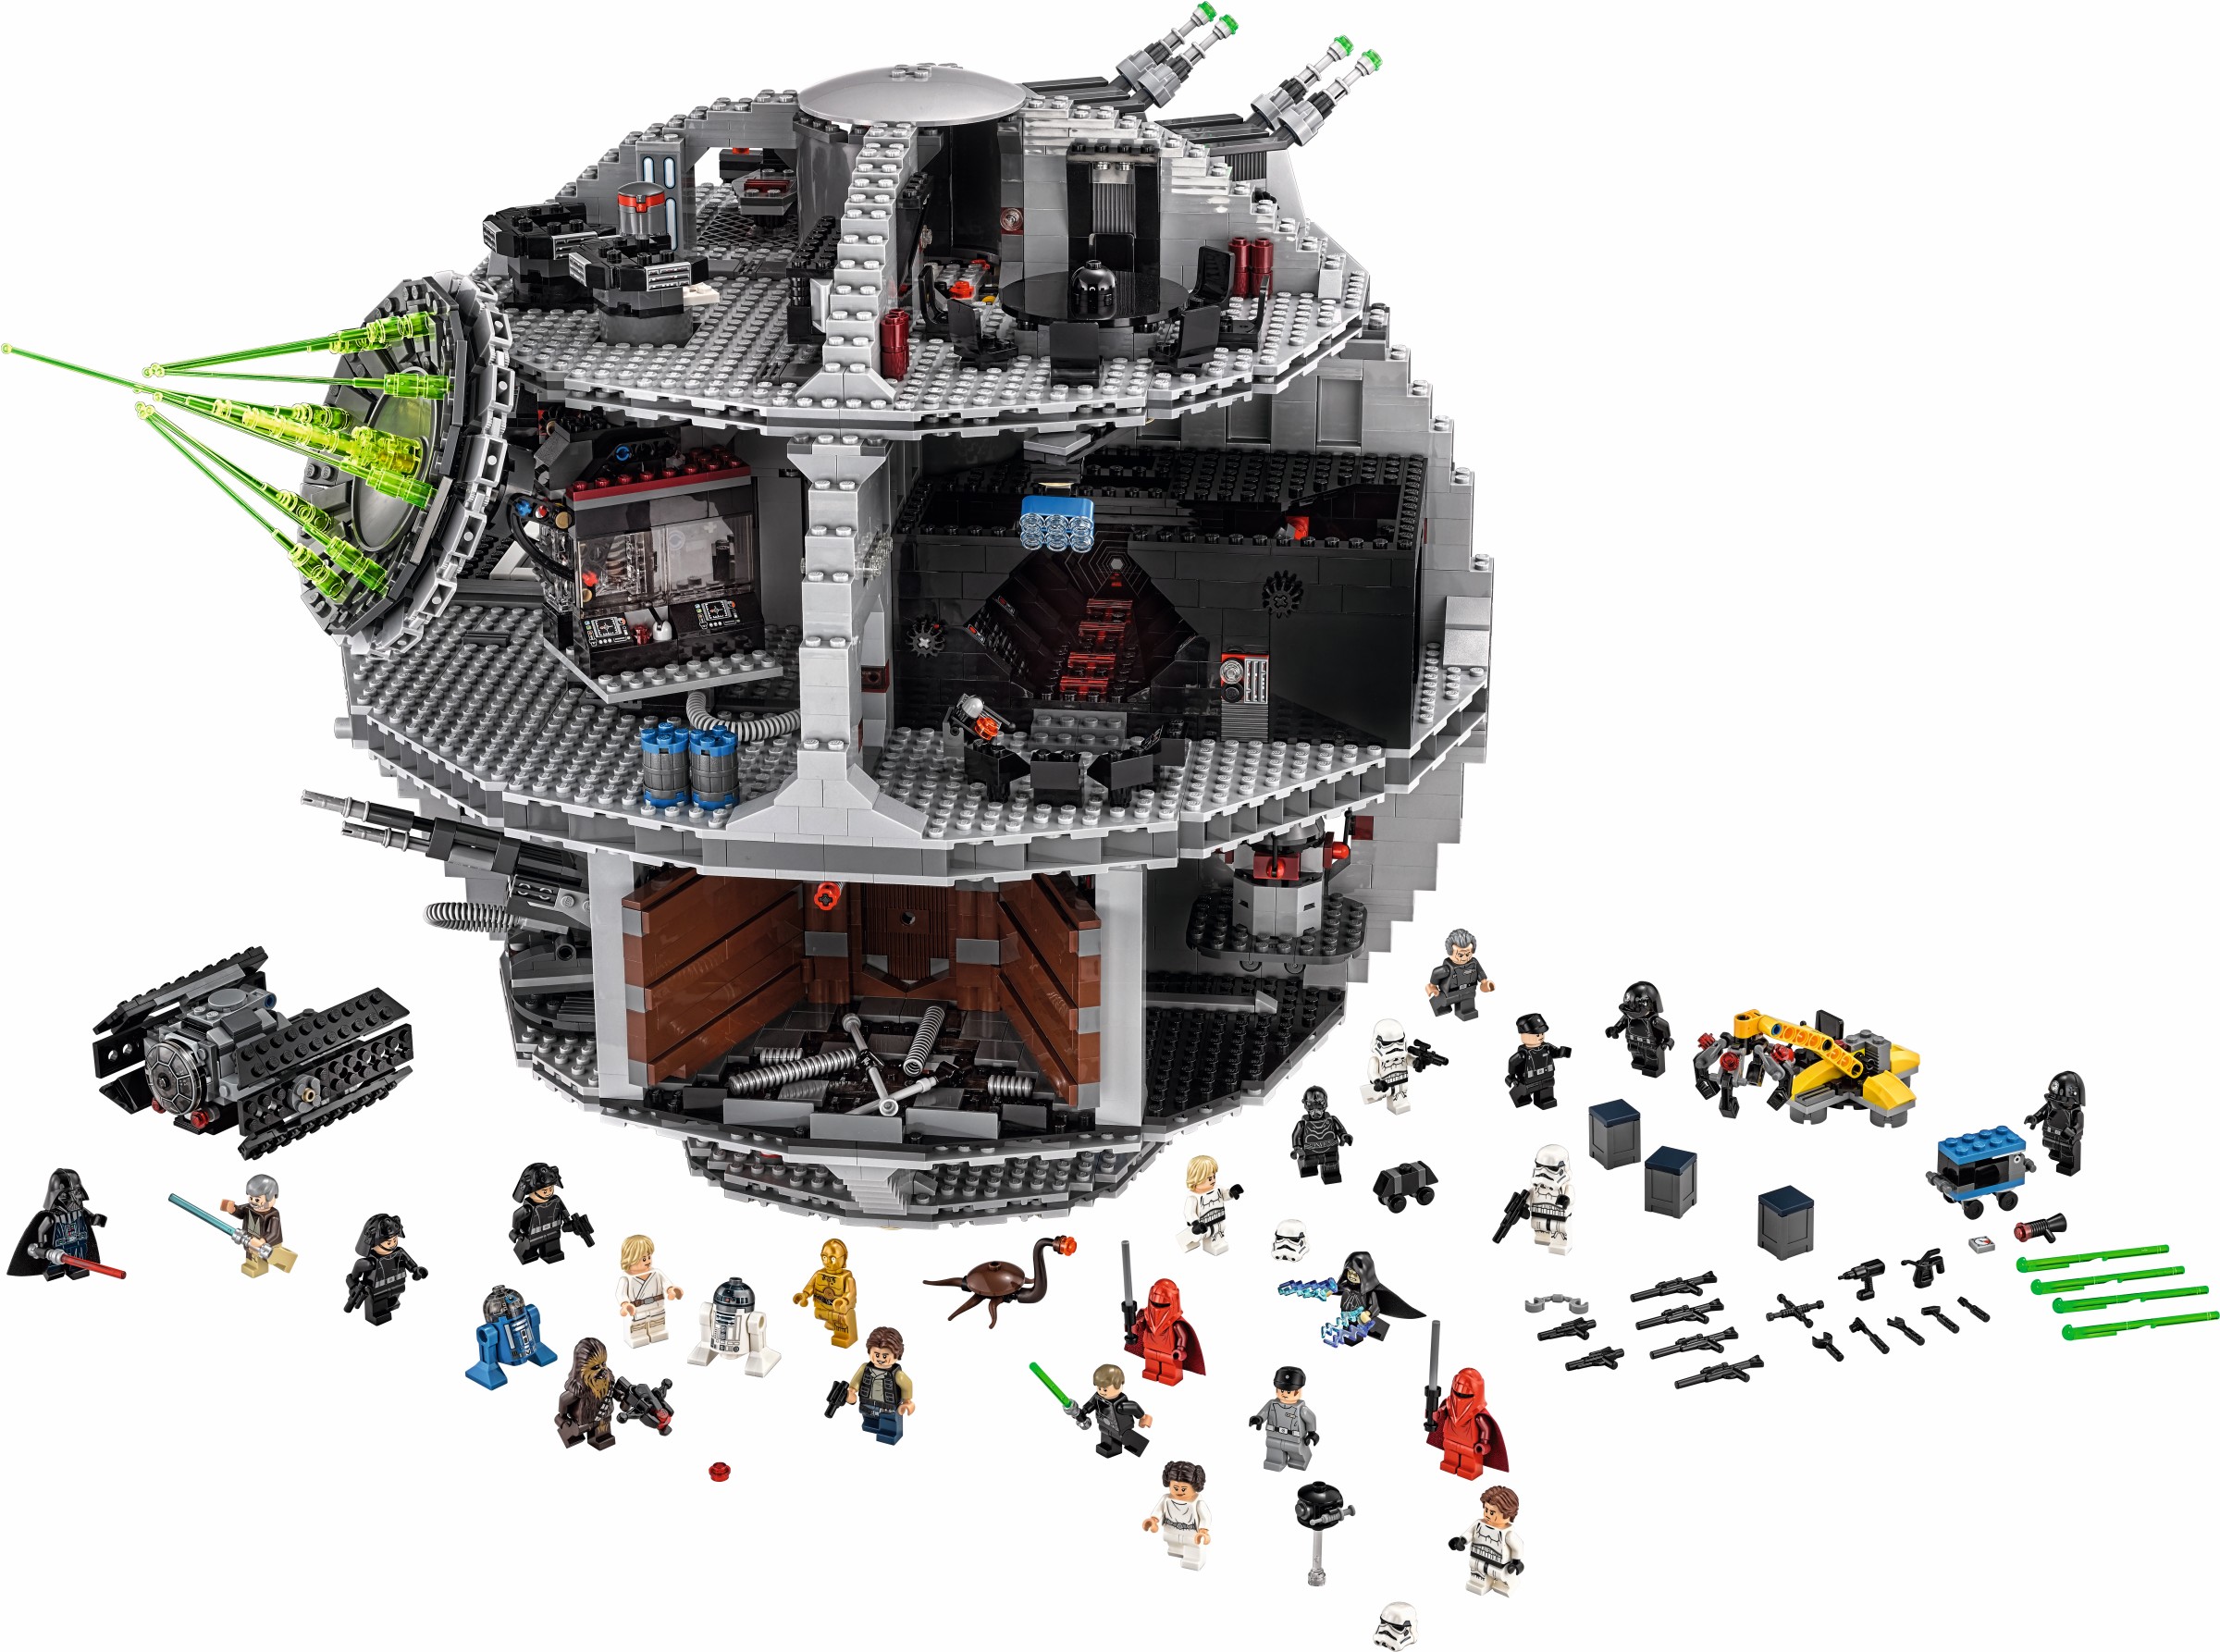 Stejl knude Vellykket Lego 75159 Death Star - Lego Star Wars set for sale best price